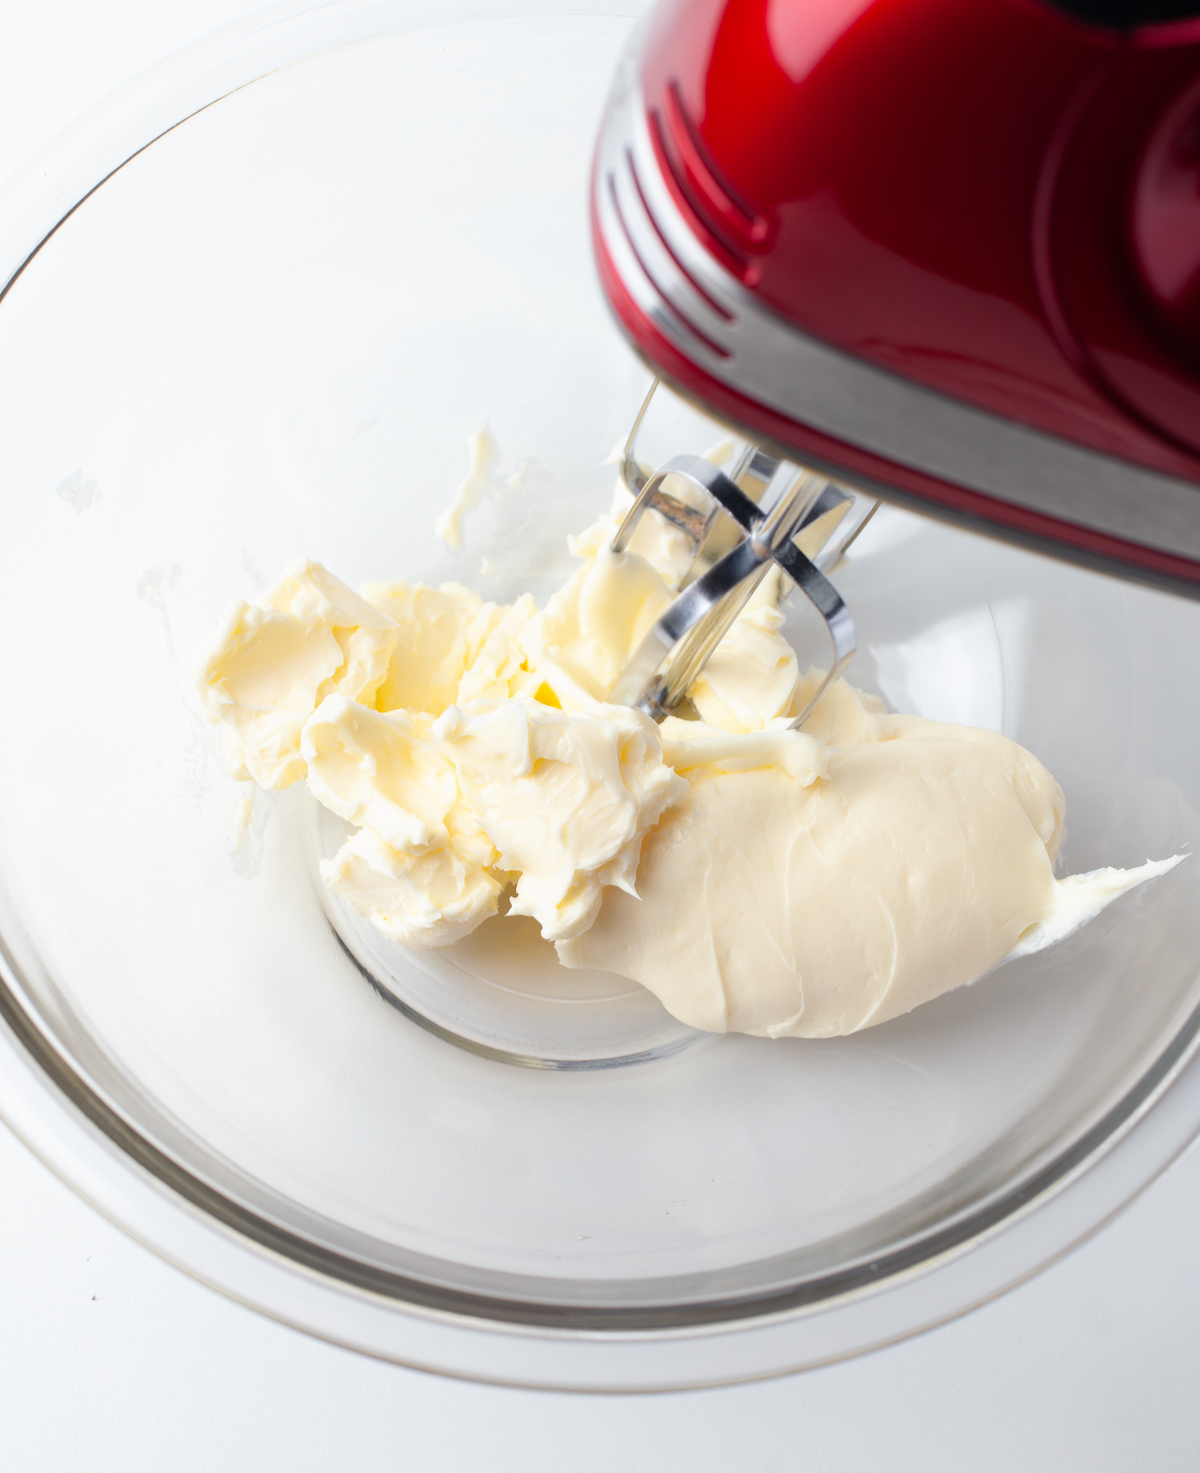 Cream together the butter, lemon juice, salt, and sugar